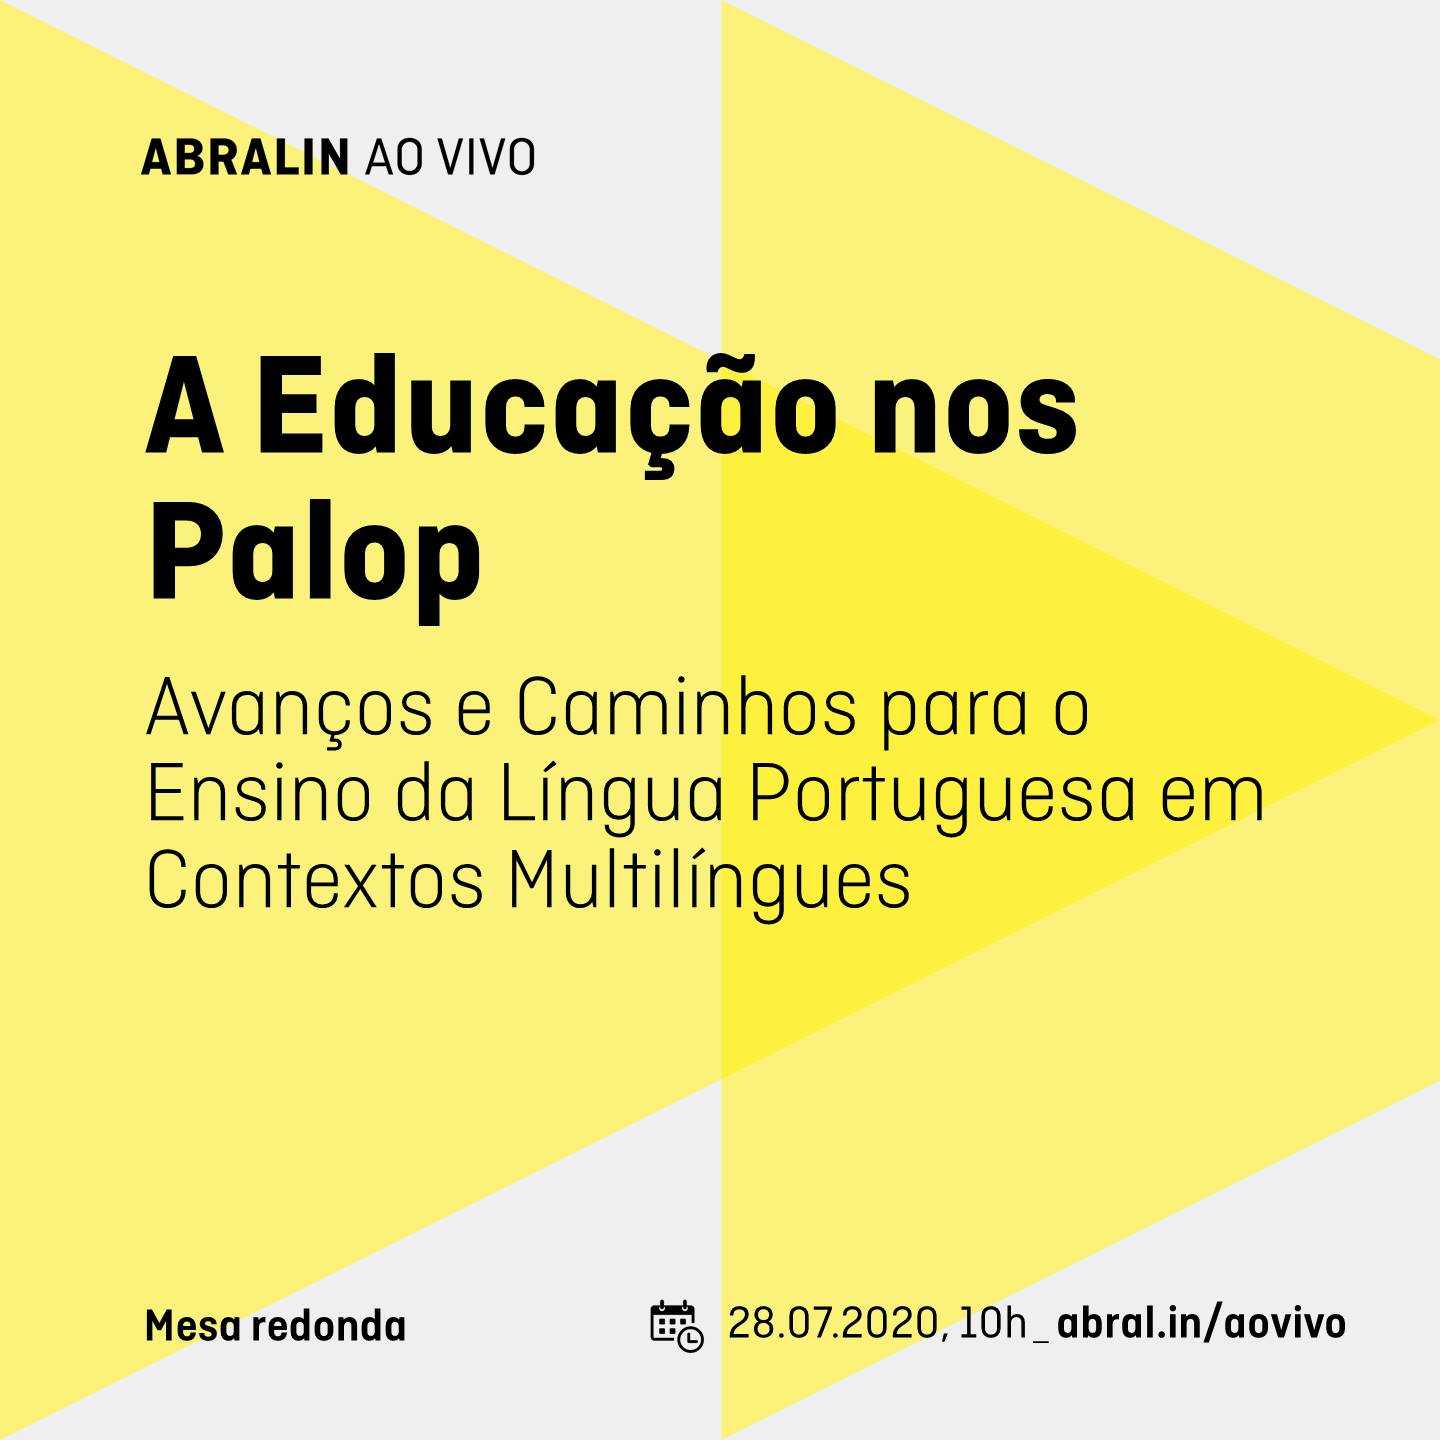 A educação em contextos multilingues nos PALOP